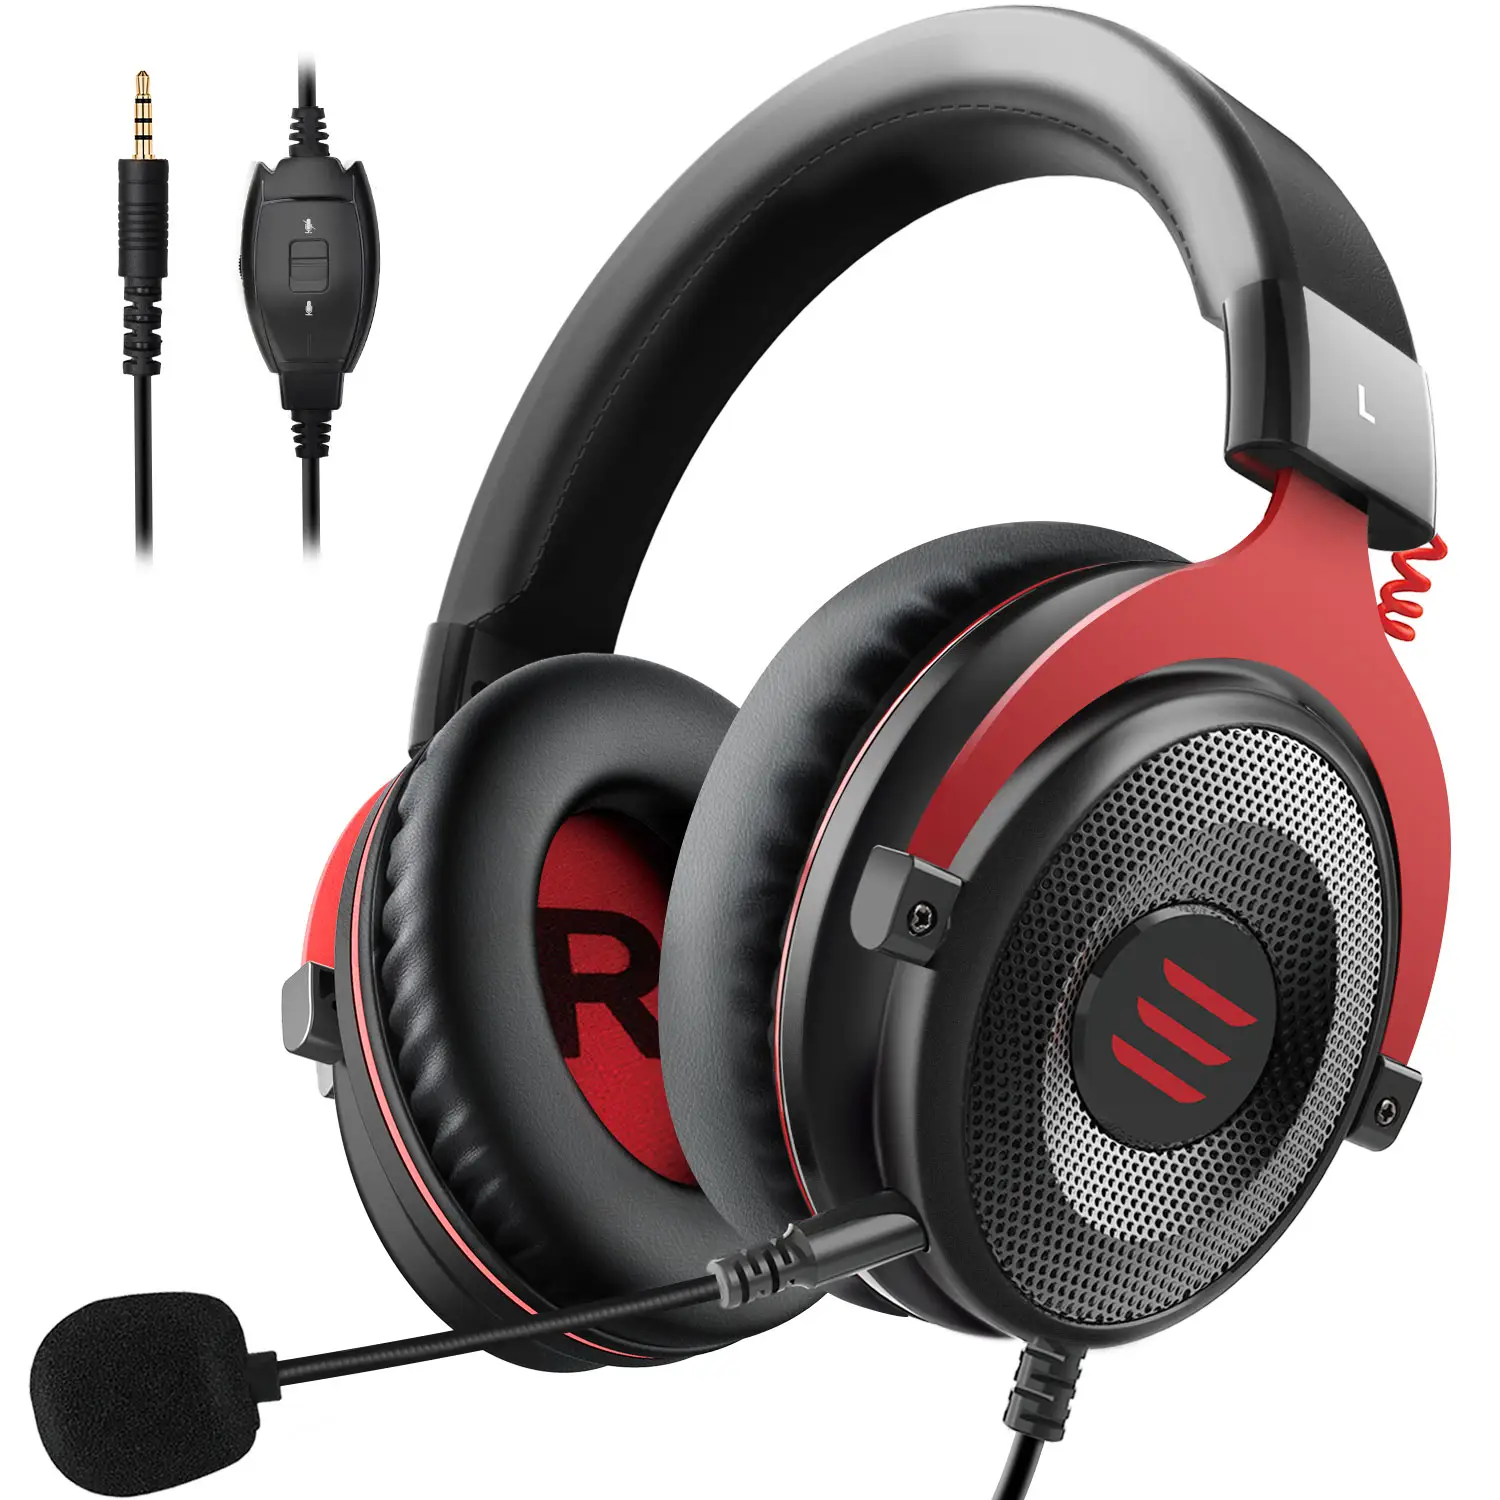 EKSA-auriculares para videojuegos E900, cascos para jugar con gran controlador de 50mm, con micrófono con cancelación de ruido, para PS4